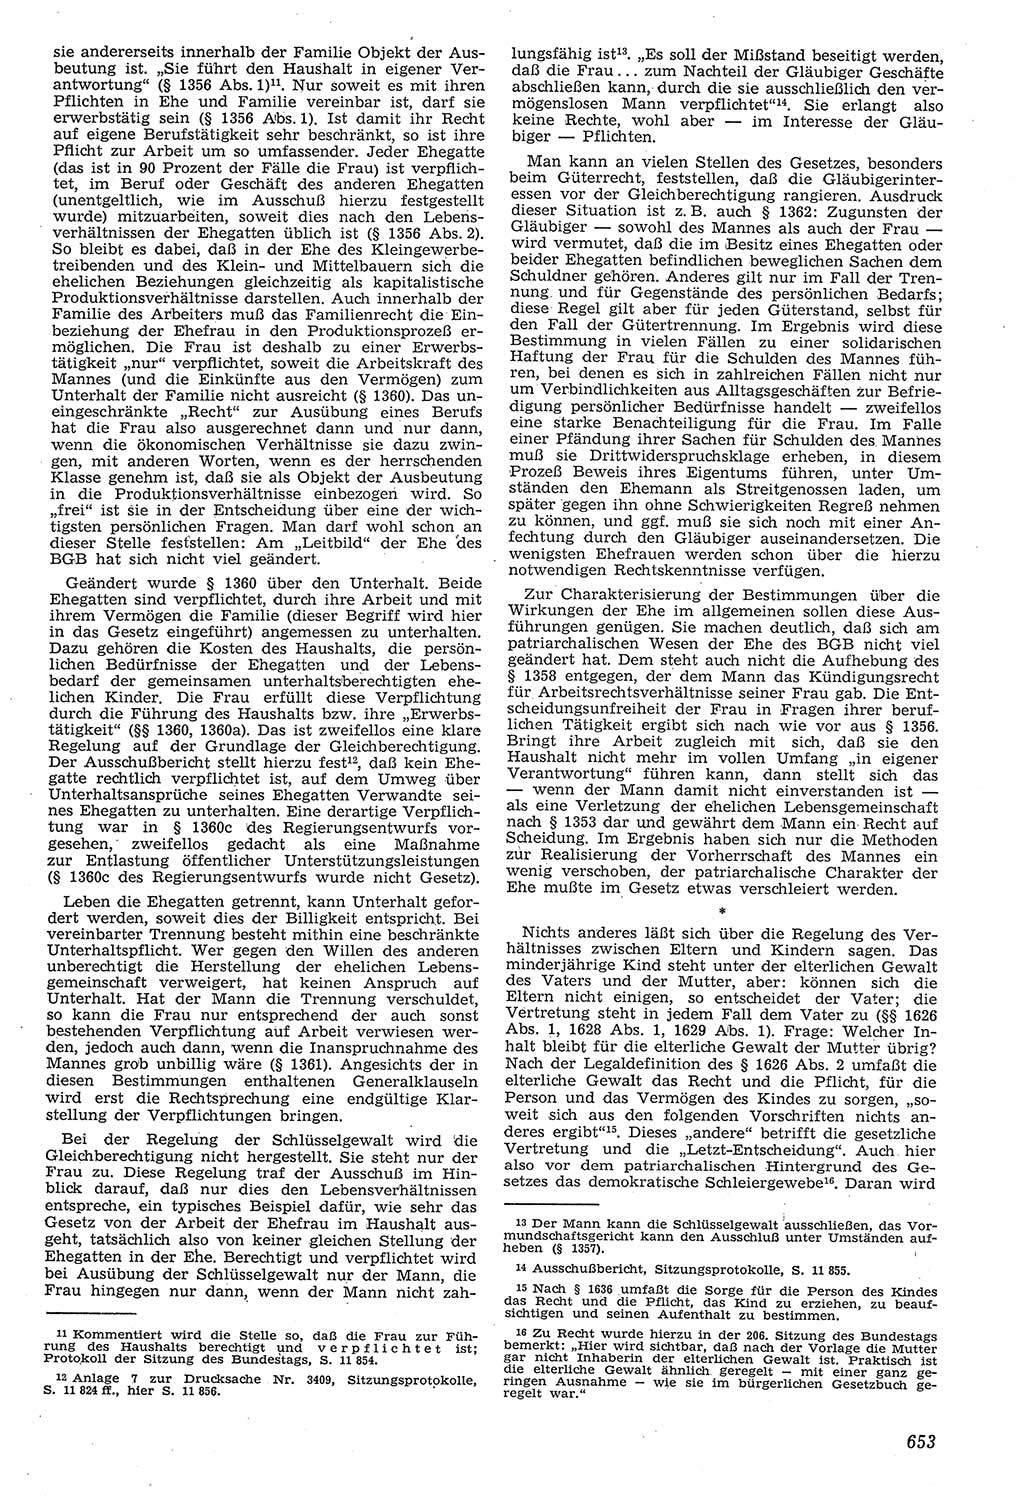 Neue Justiz (NJ), Zeitschrift für Recht und Rechtswissenschaft [Deutsche Demokratische Republik (DDR)], 11. Jahrgang 1957, Seite 653 (NJ DDR 1957, S. 653)